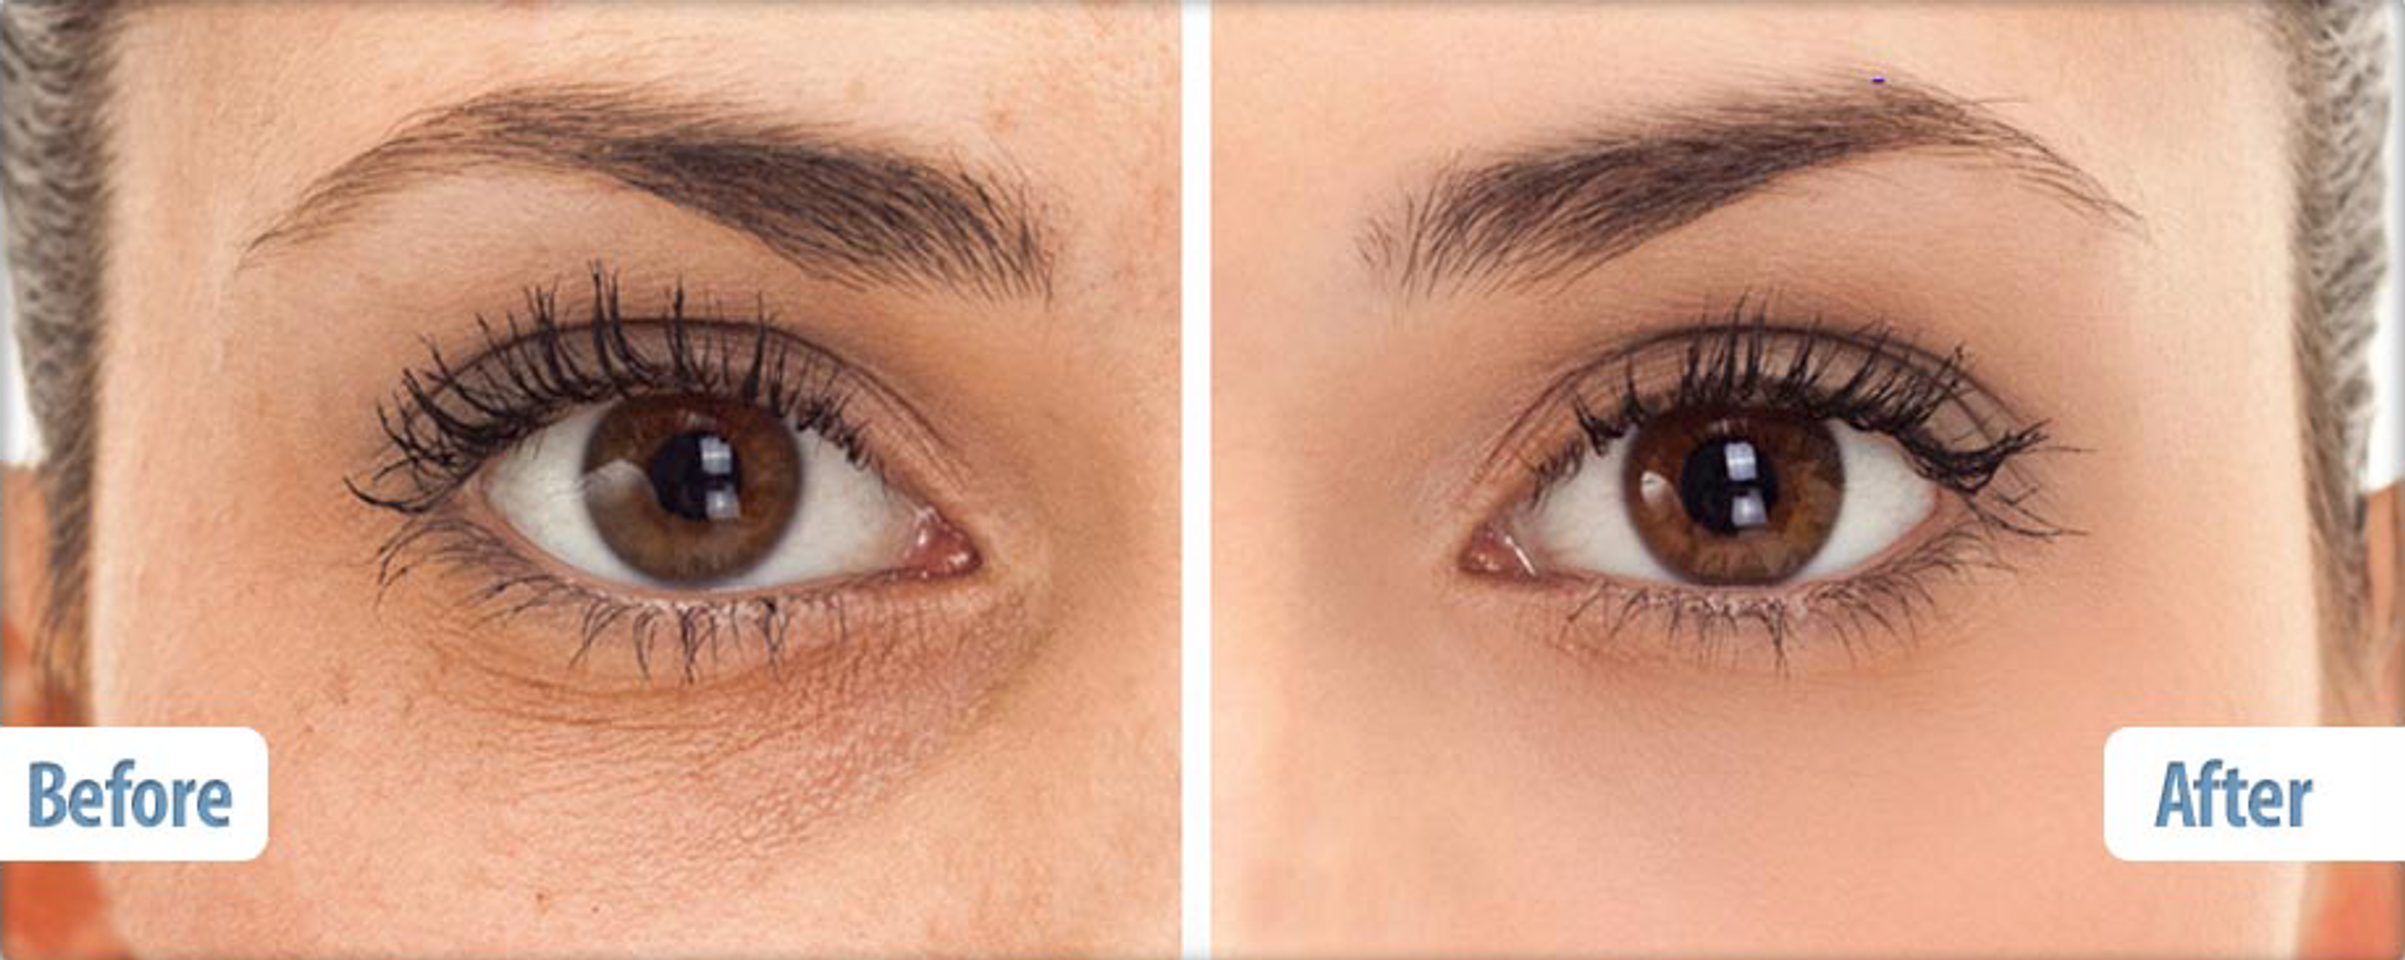 Kem mắt Balance Active Formula Snake Venom Eye Cream giúp làm mờ vết nhăn và thâm quầng mắt hiệu quả